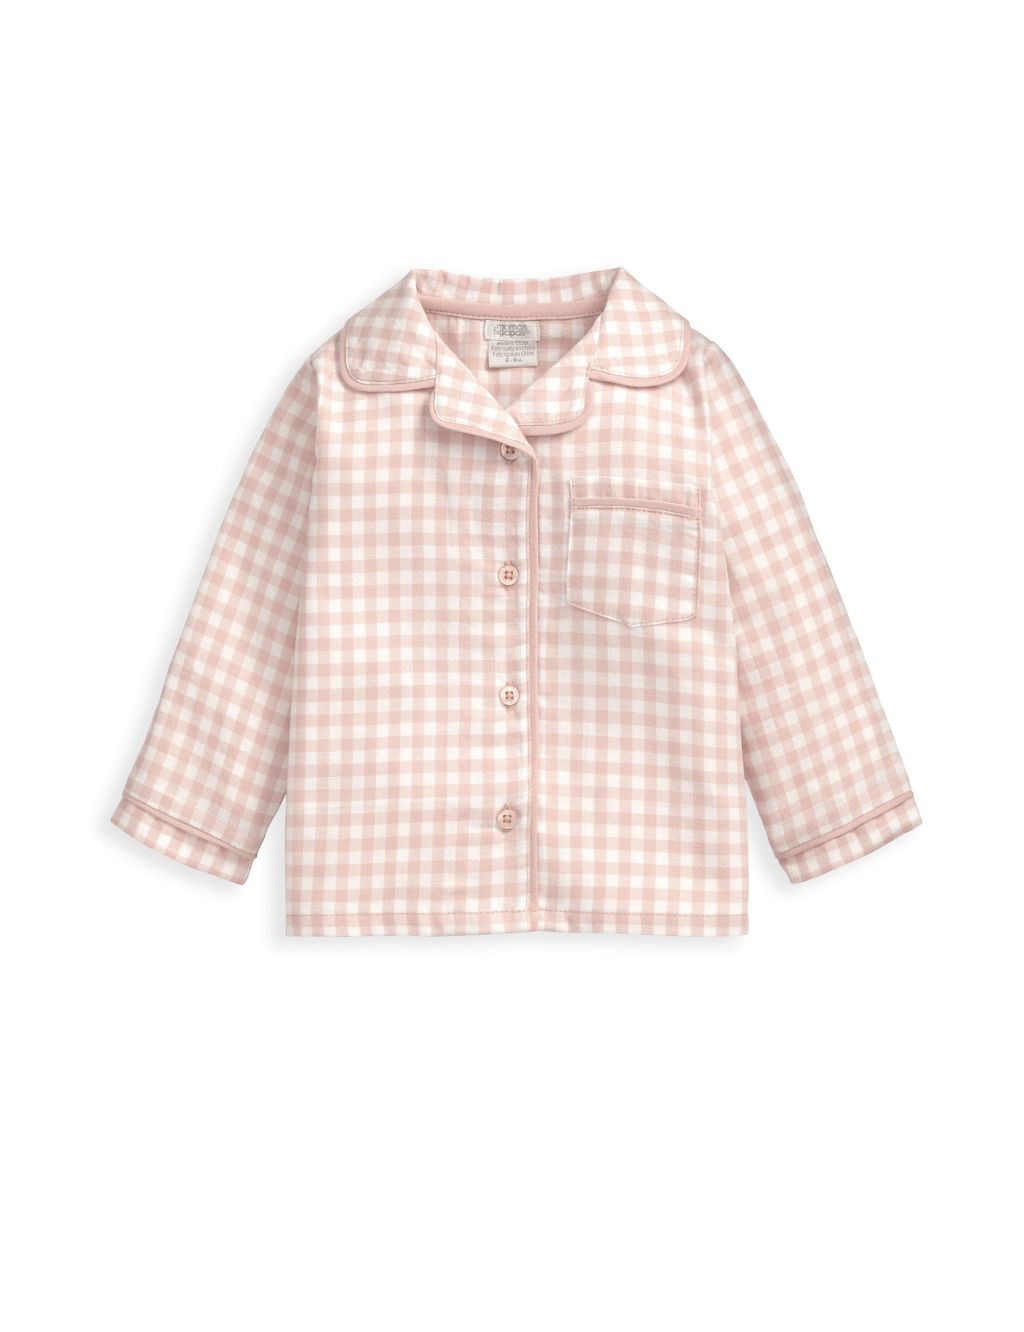 Pink Check Woven Pyjamas (6 Mths-3 yrs) image 2